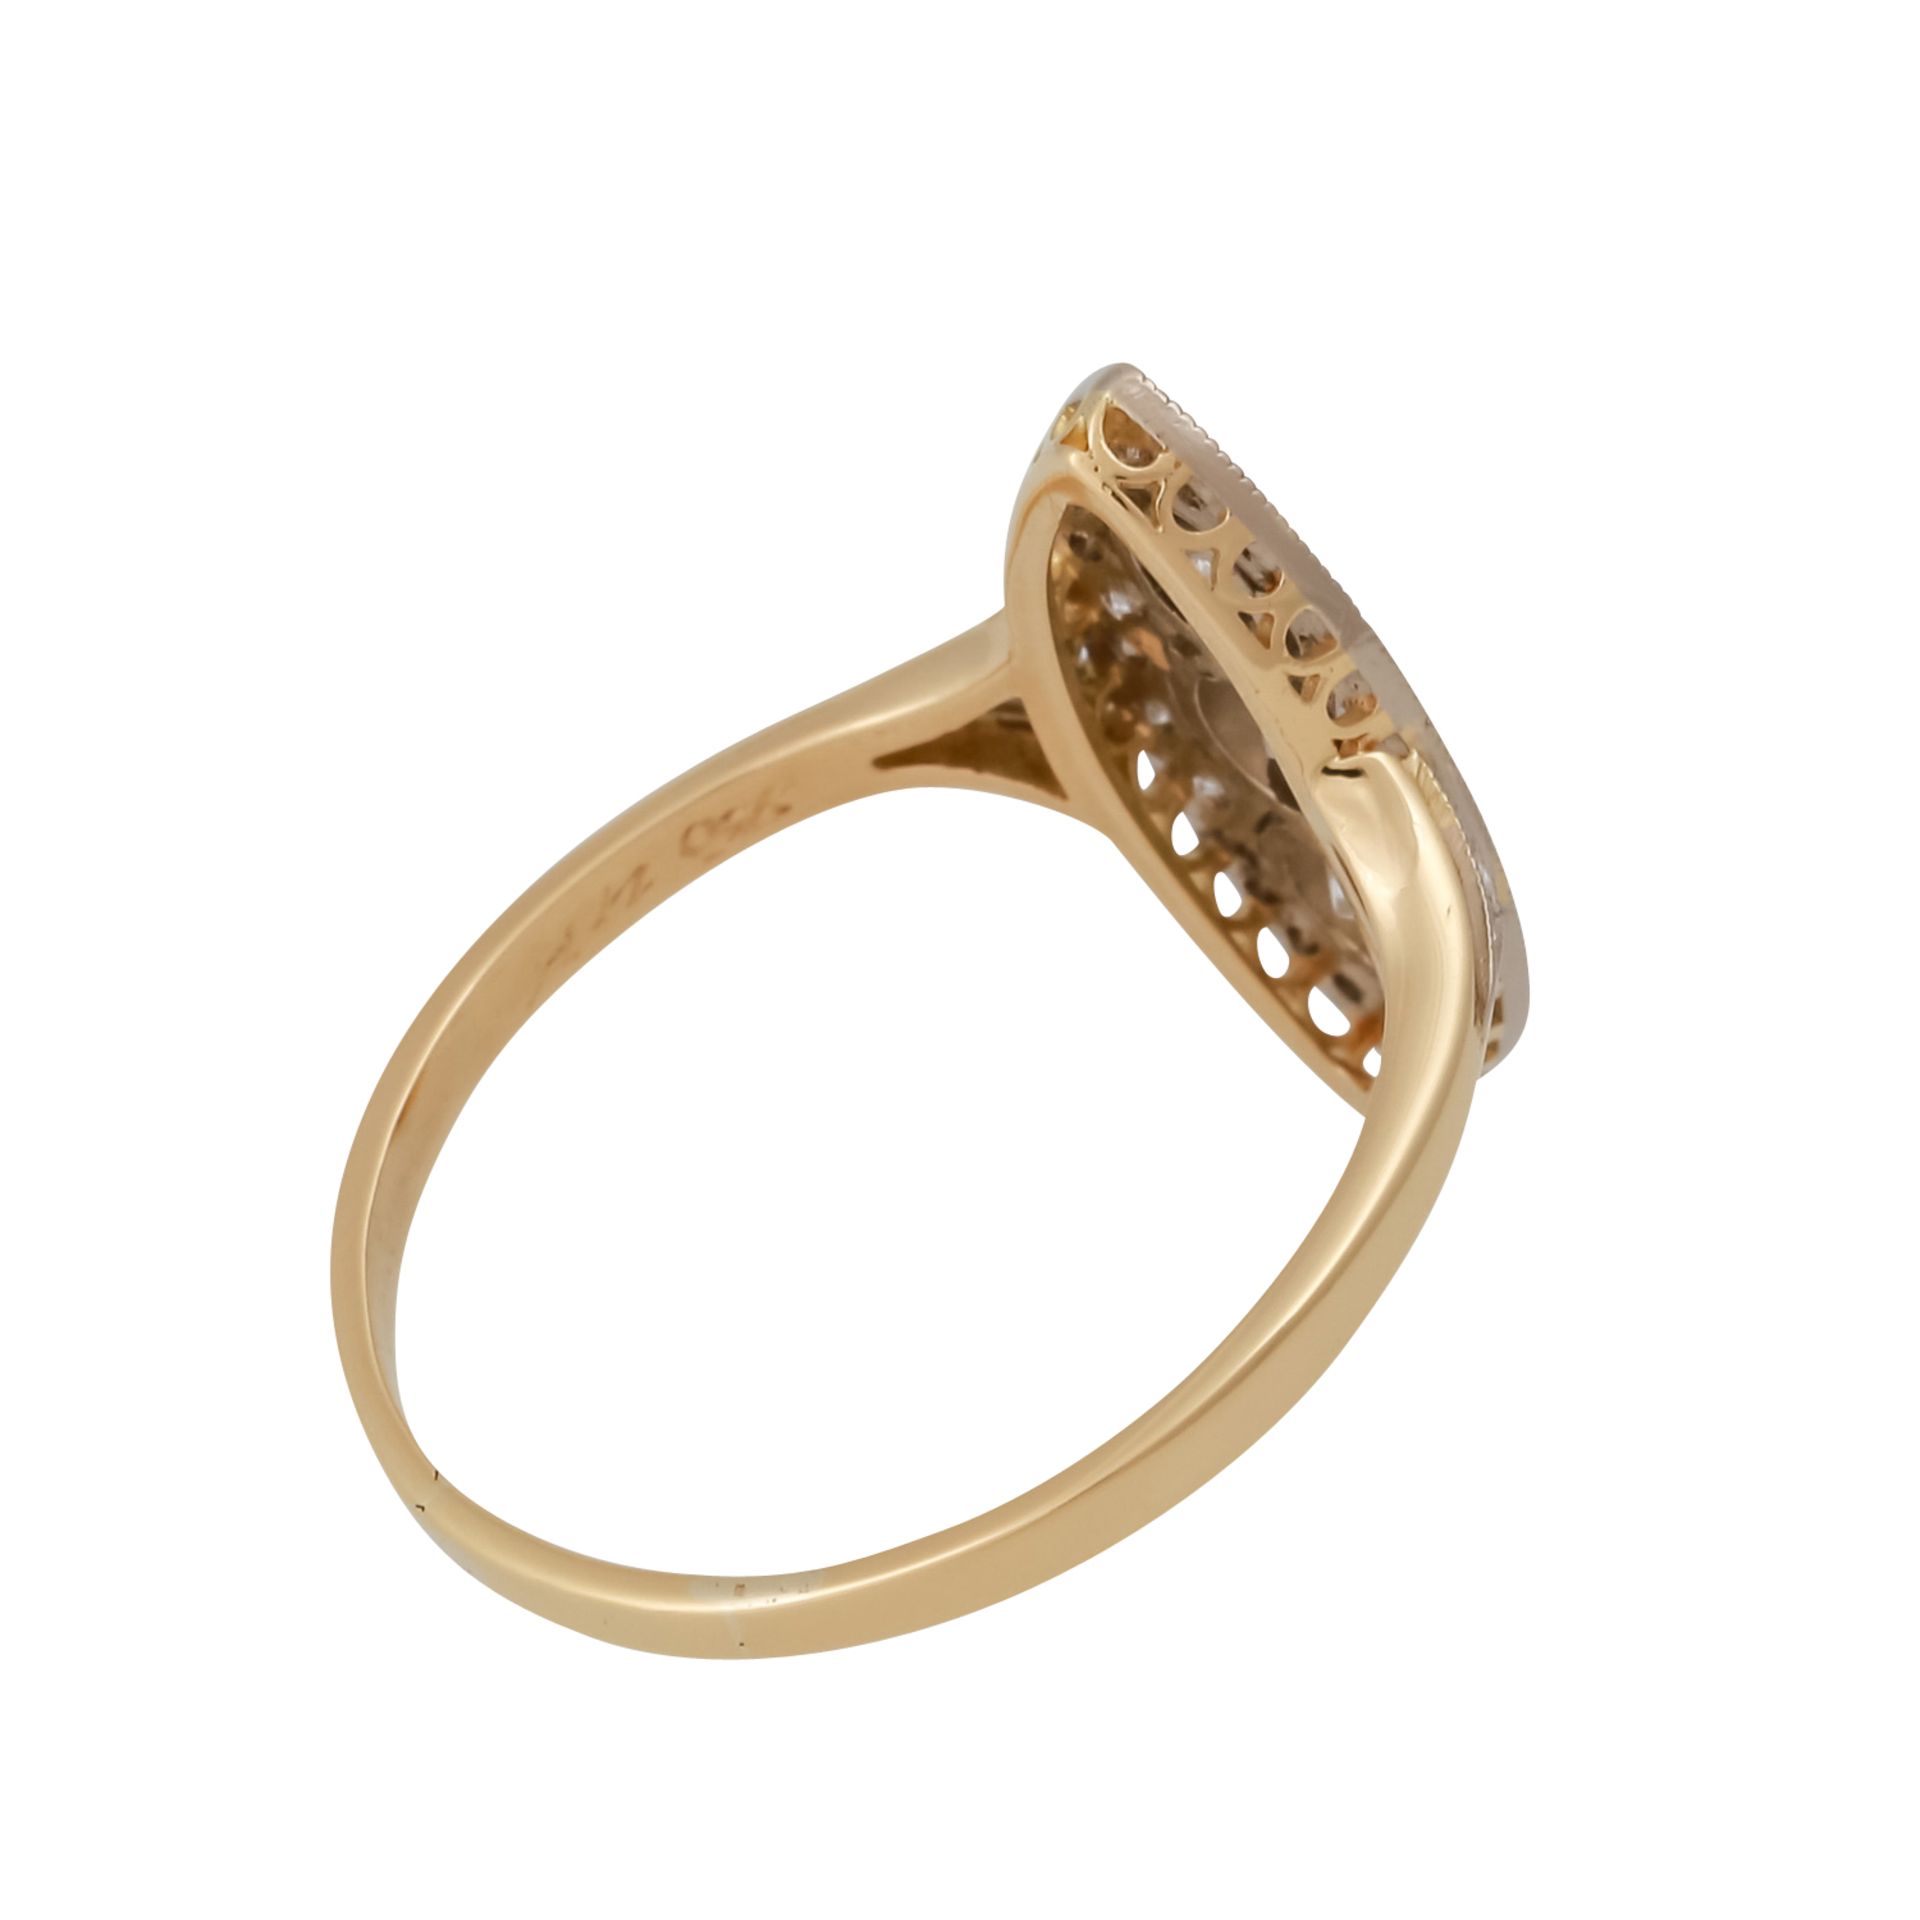 Ring im Stil des Art Déco mit Brillanten, zus. ca. 0,6 ct,gute Farbe und Reinheit, GG/WG 18K, RW: - Bild 3 aus 5